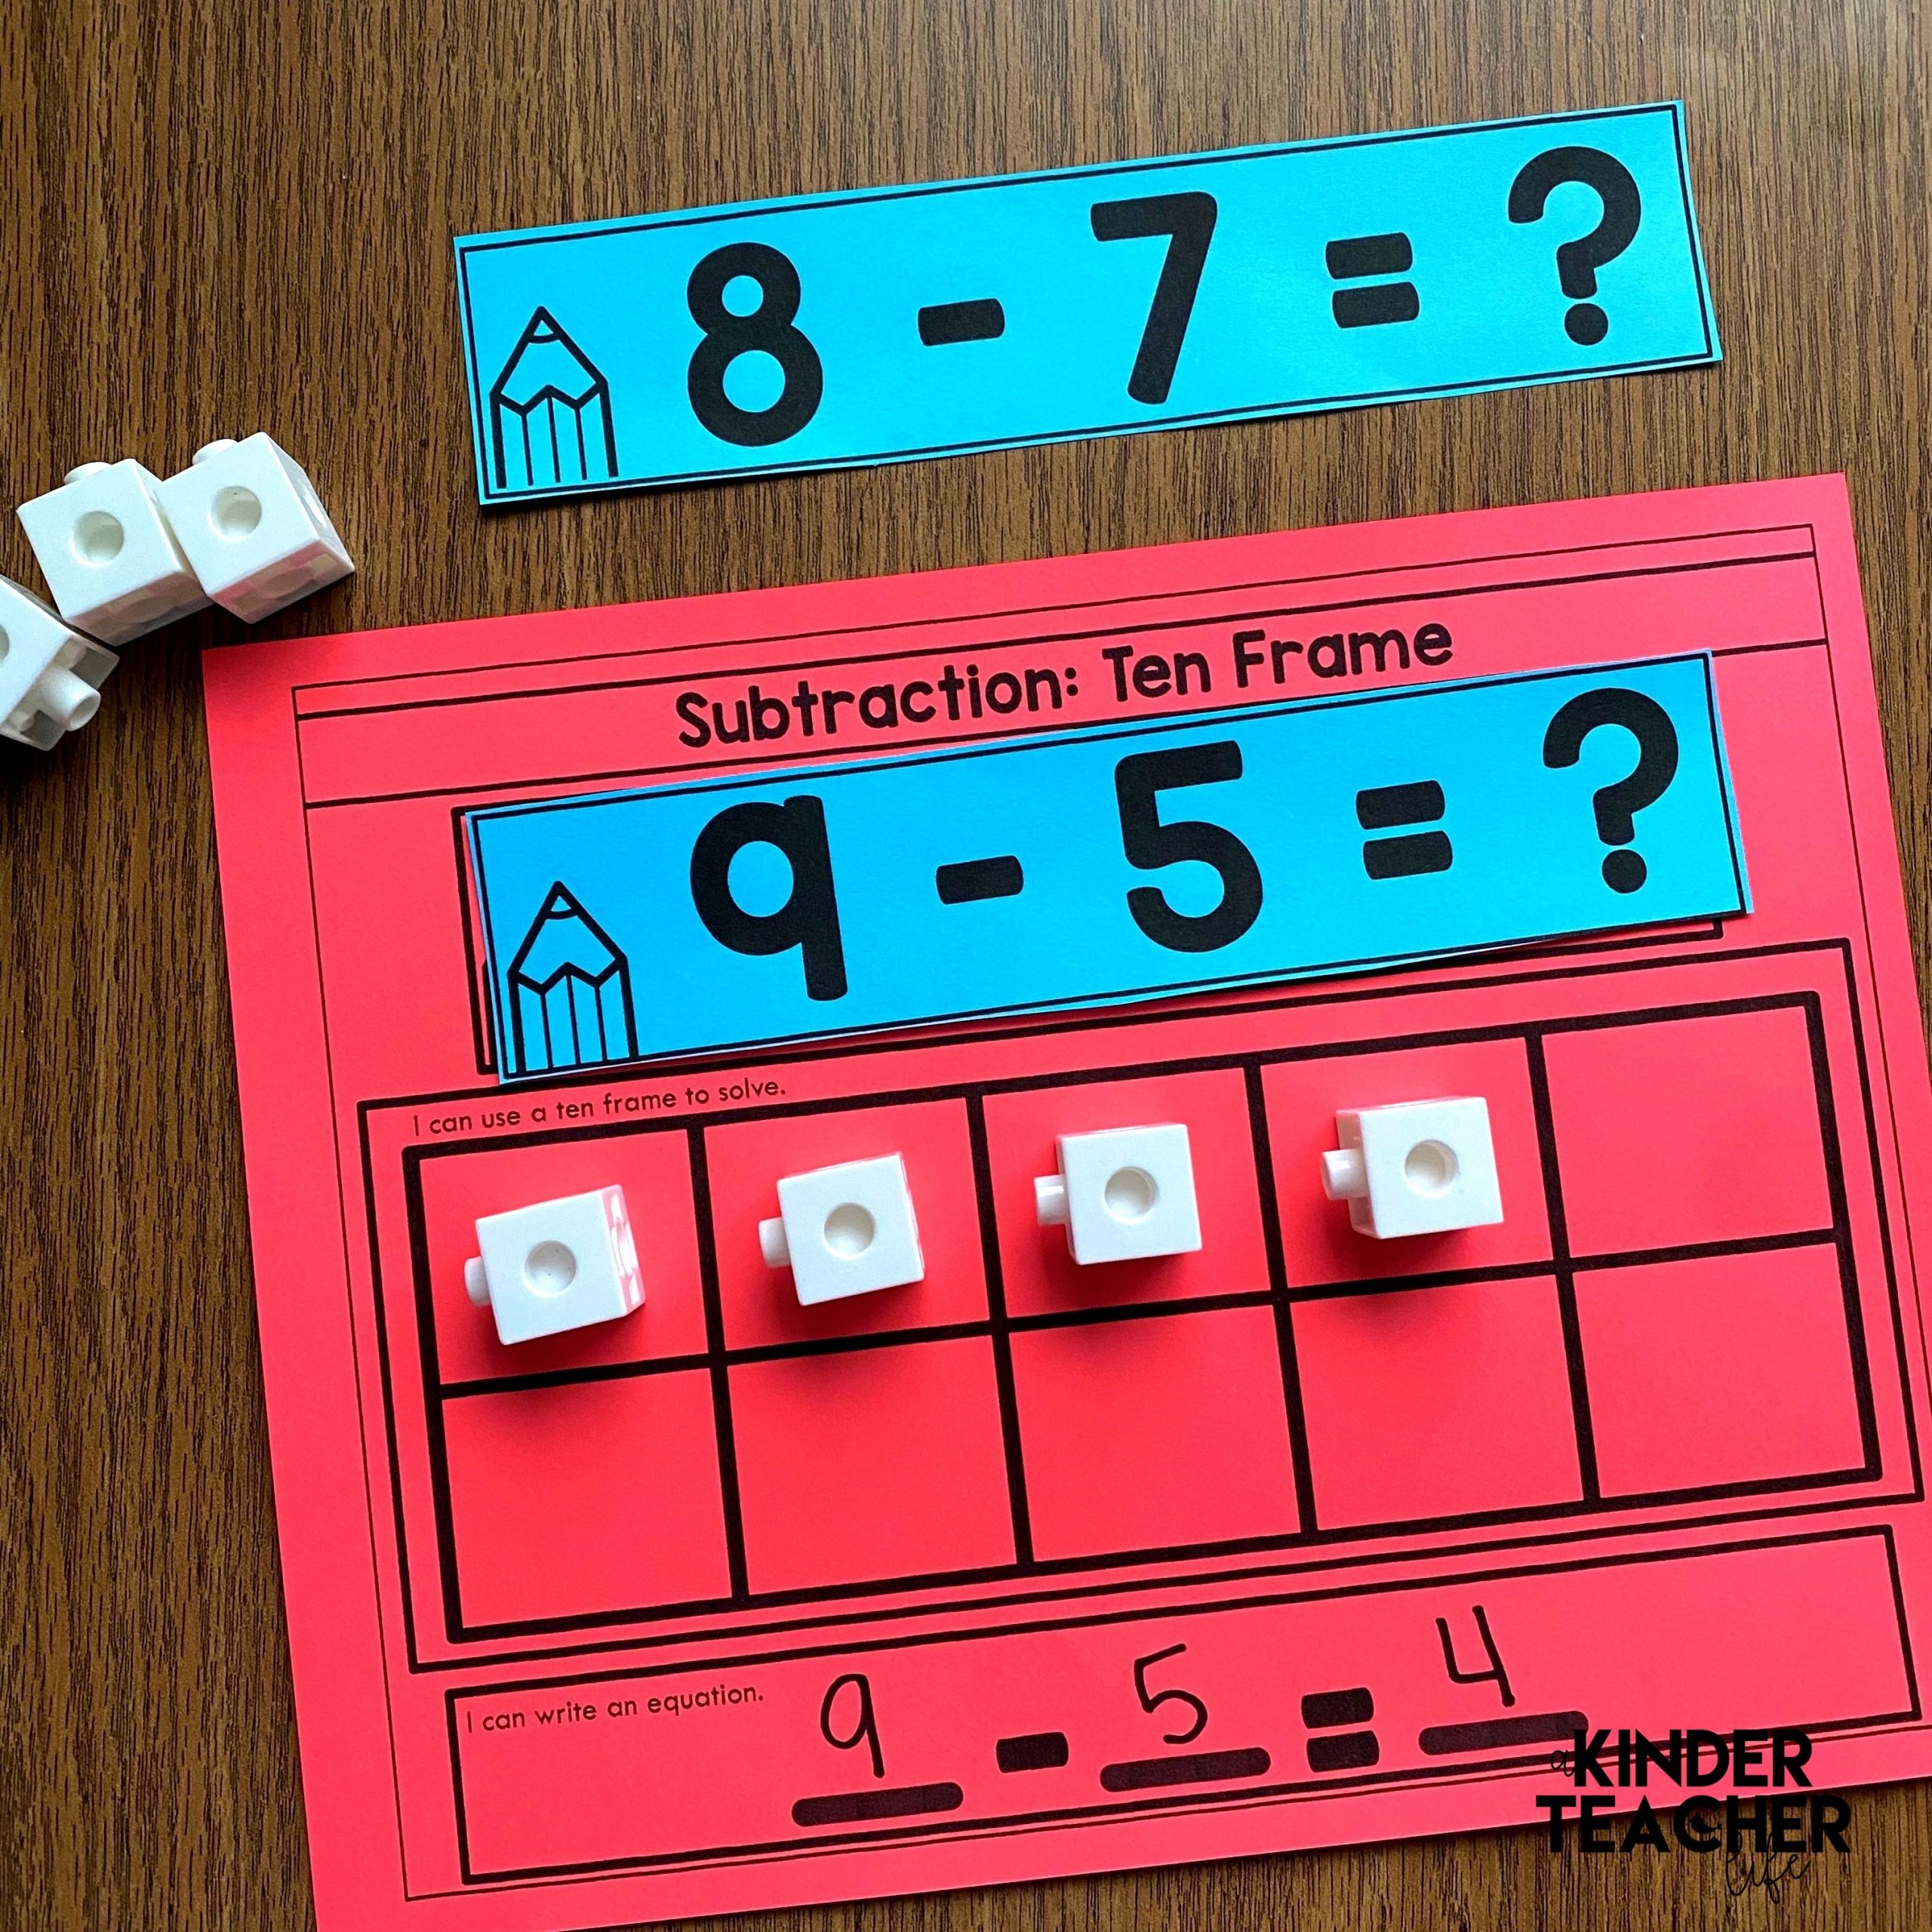 Subtraction Math Center Activities and Digital Games for Kindergarten